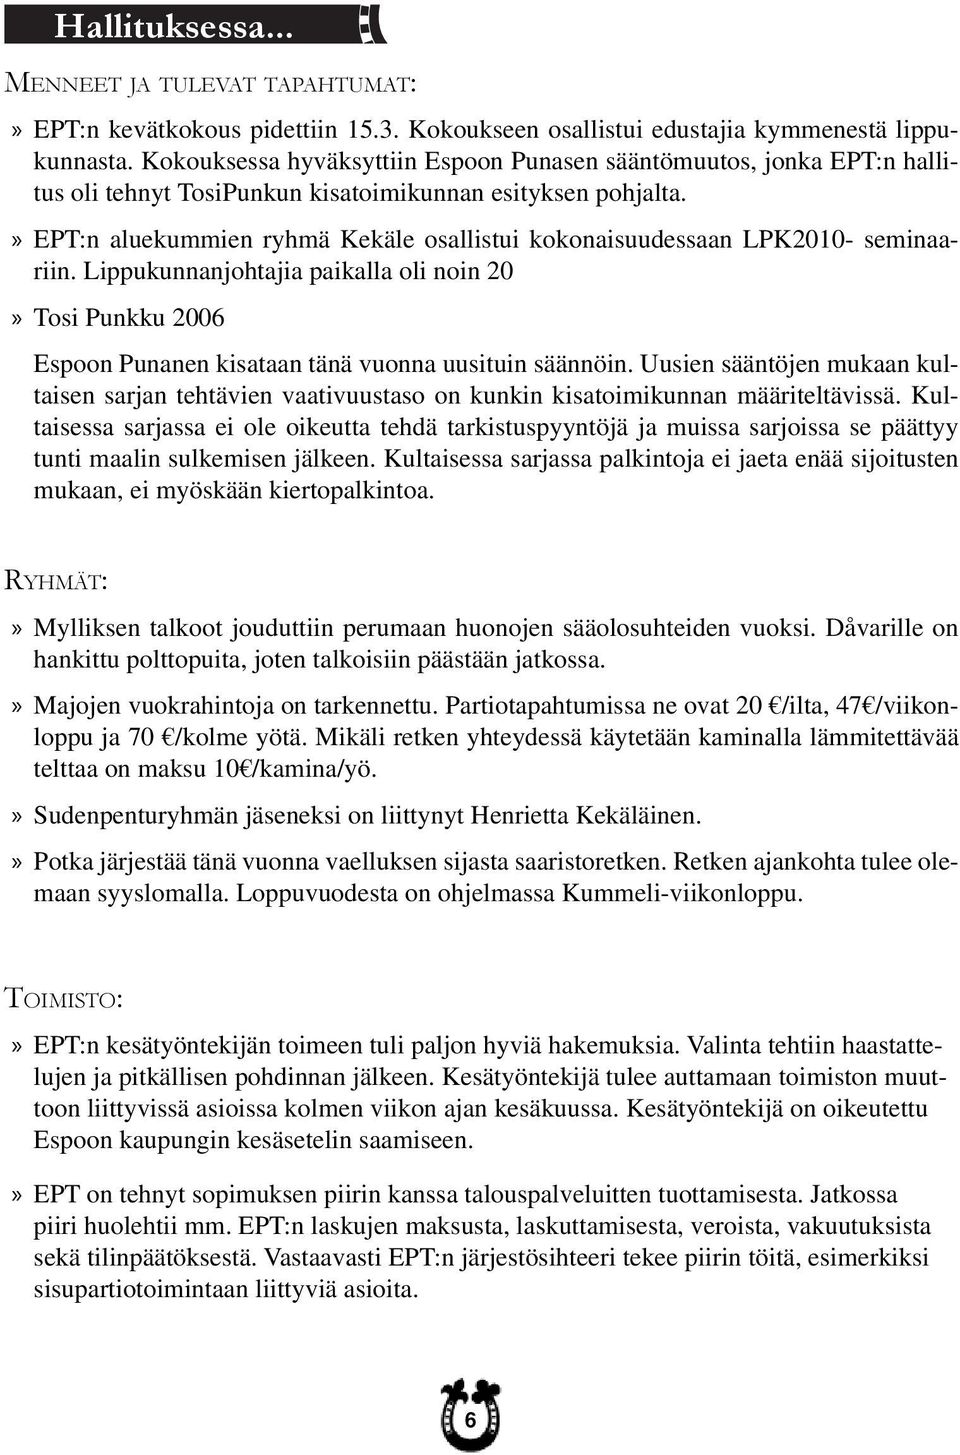 EPT:n aluekummien ryhmä Kekäle osallistui kokonaisuudessaan LPK2010- seminaariin. Lippukunnanjohtajia paikalla oli noin 20 Tosi Punkku 2006 Espoon Punanen kisataan tänä vuonna uusituin säännöin.